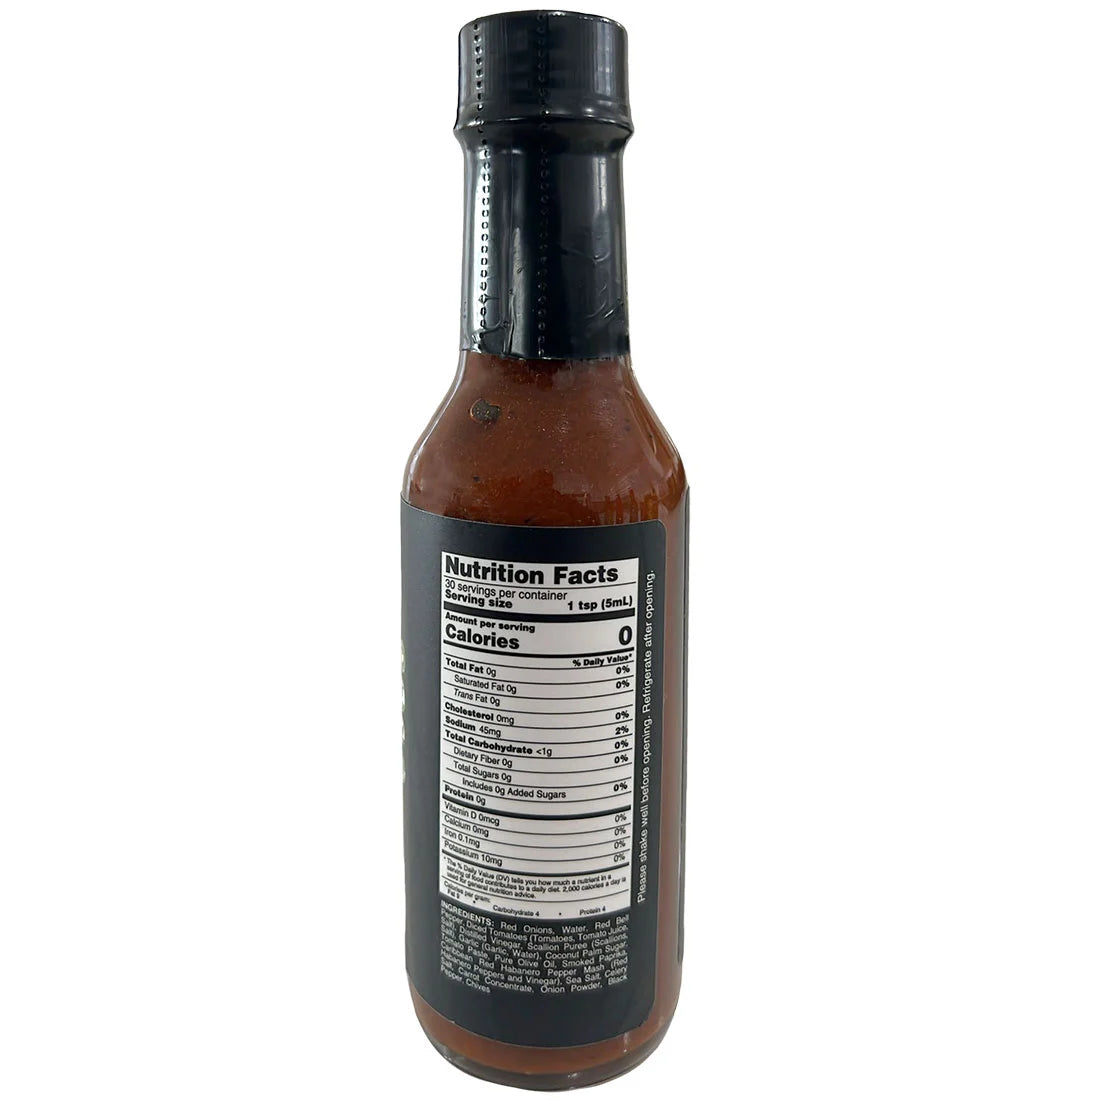 The “Mild” Plant-based KRU Sauce